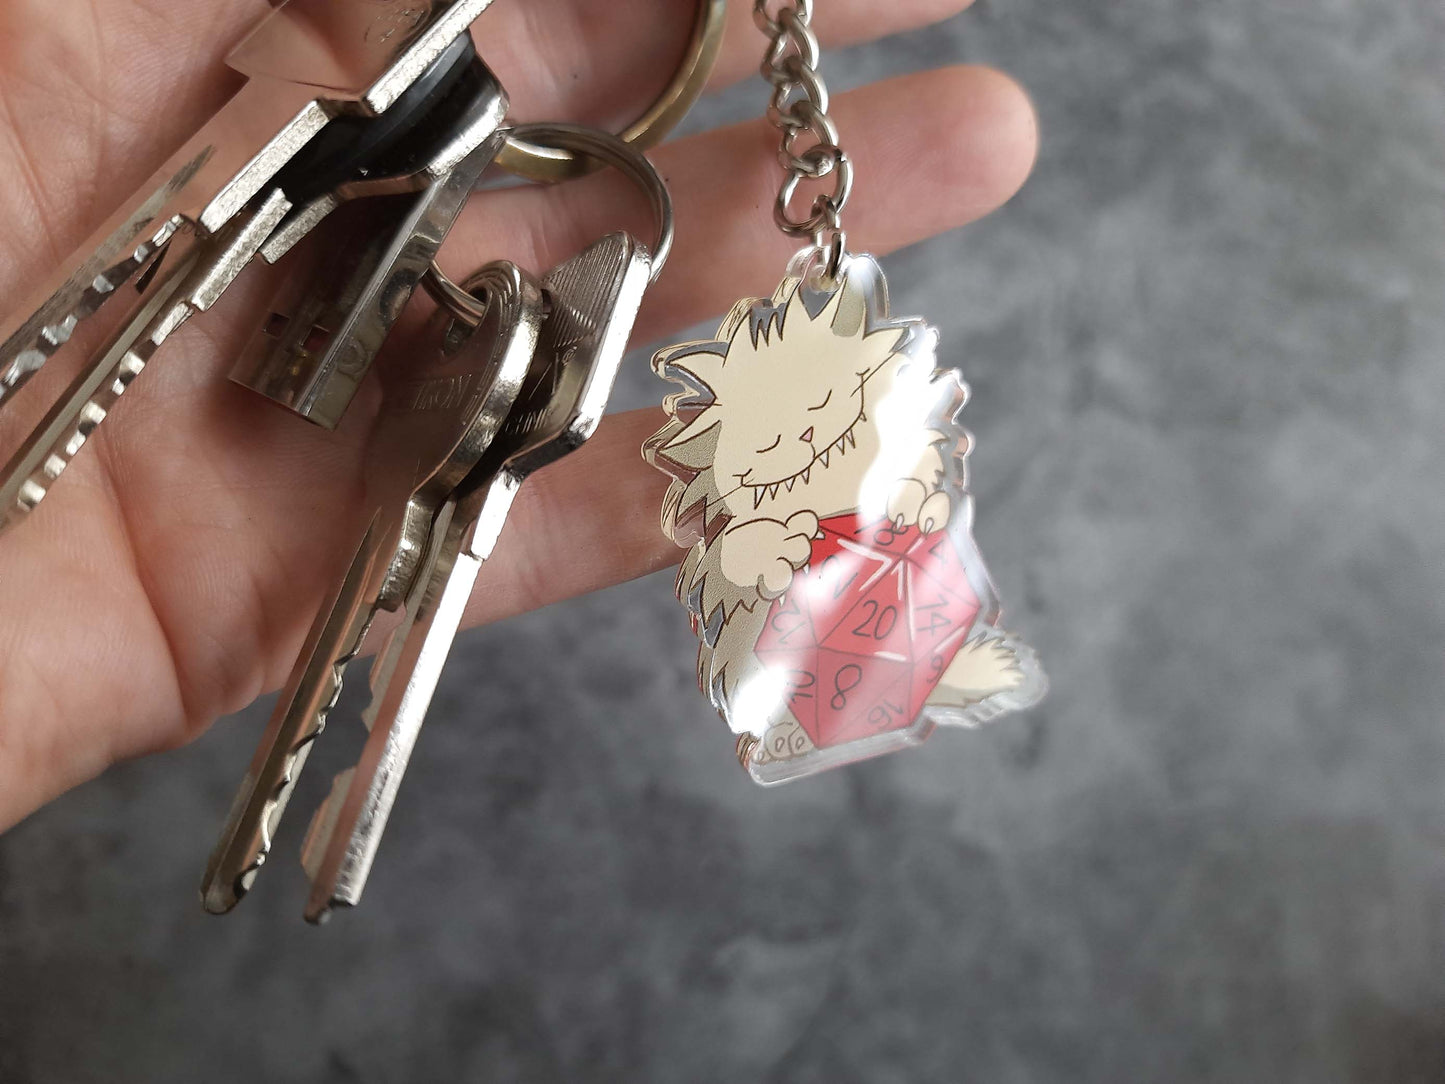 Acrylic keychain "D20 Love"